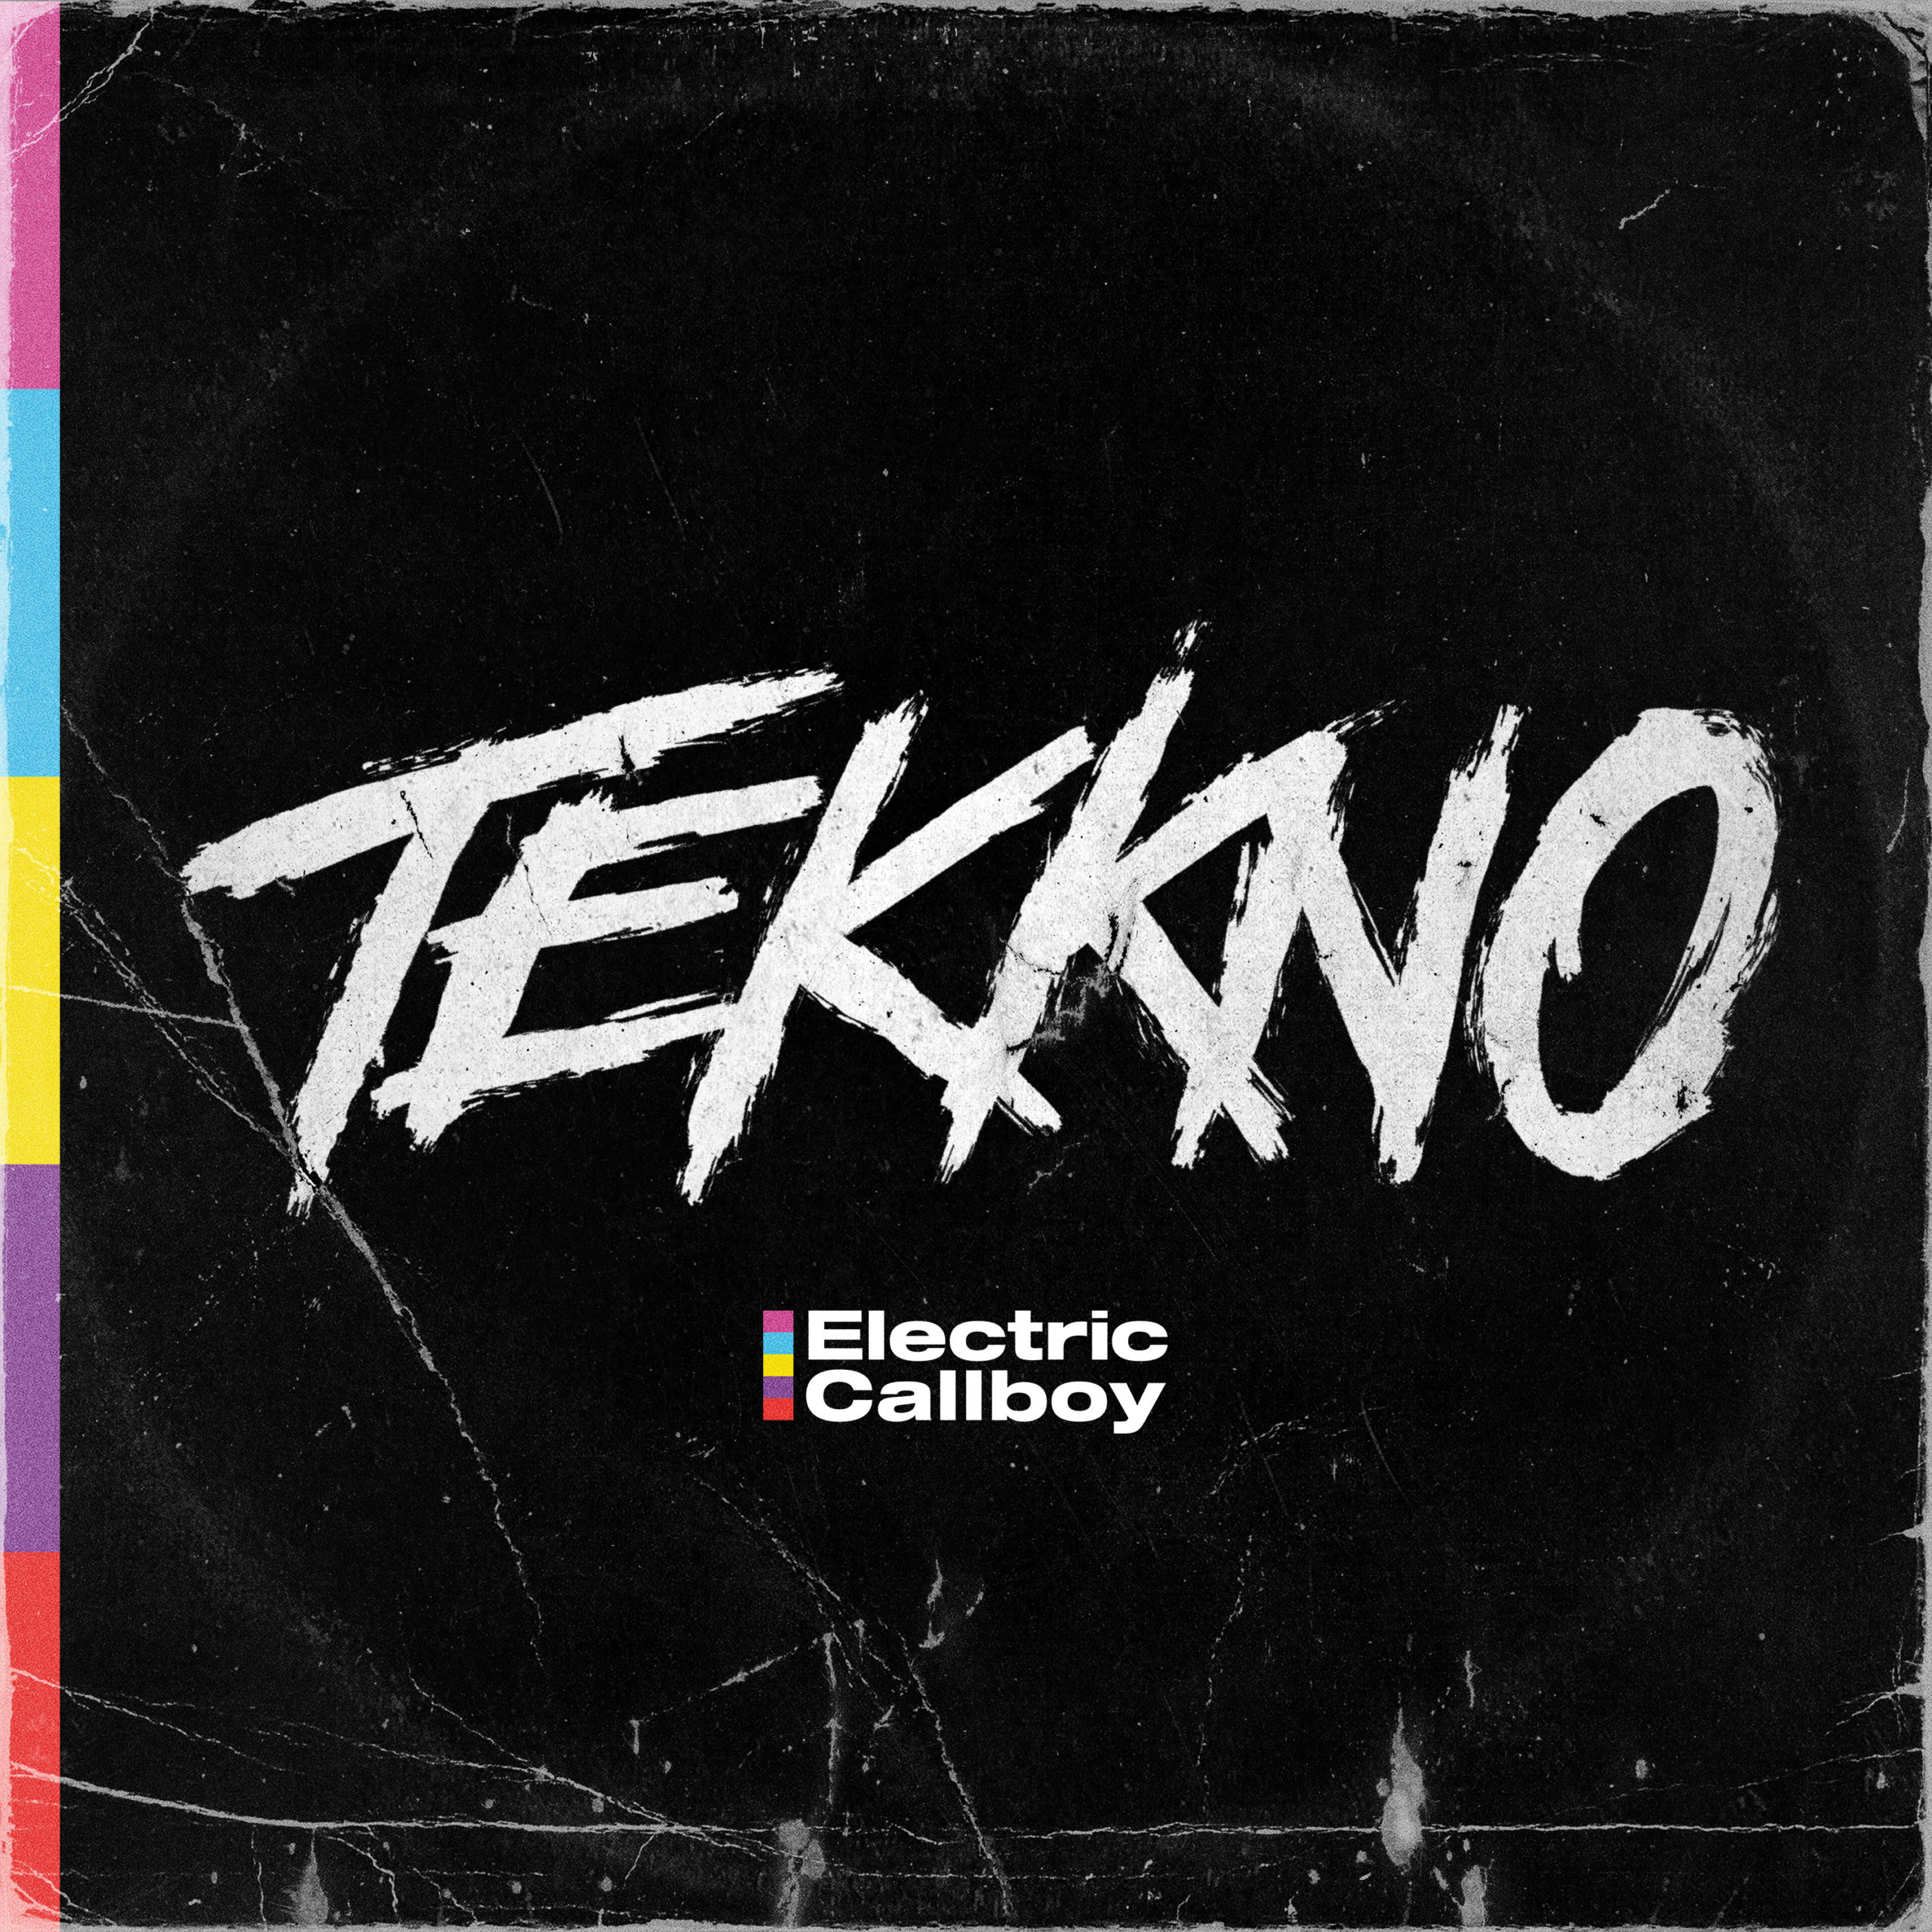 [Review] El Híbrido perfecto entre géneros dispares – “Tekkno” nuevo disco de Electric Callboy